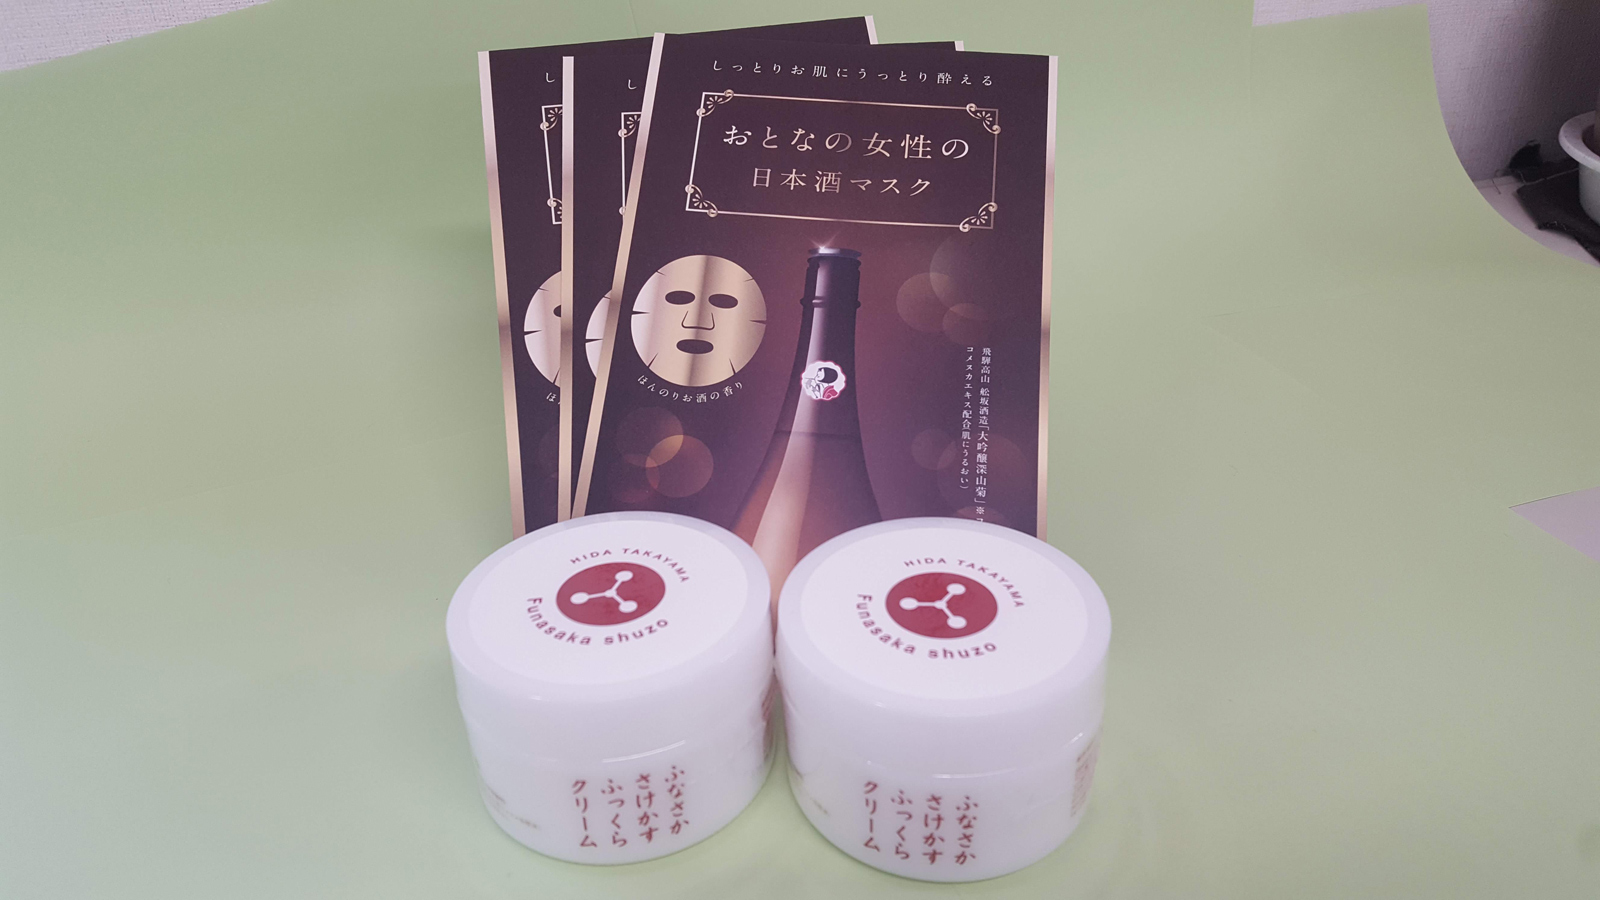 Funasaka Sake Brewery Soft and Full Sake Lees Cream and Sake Lees Facial Packs